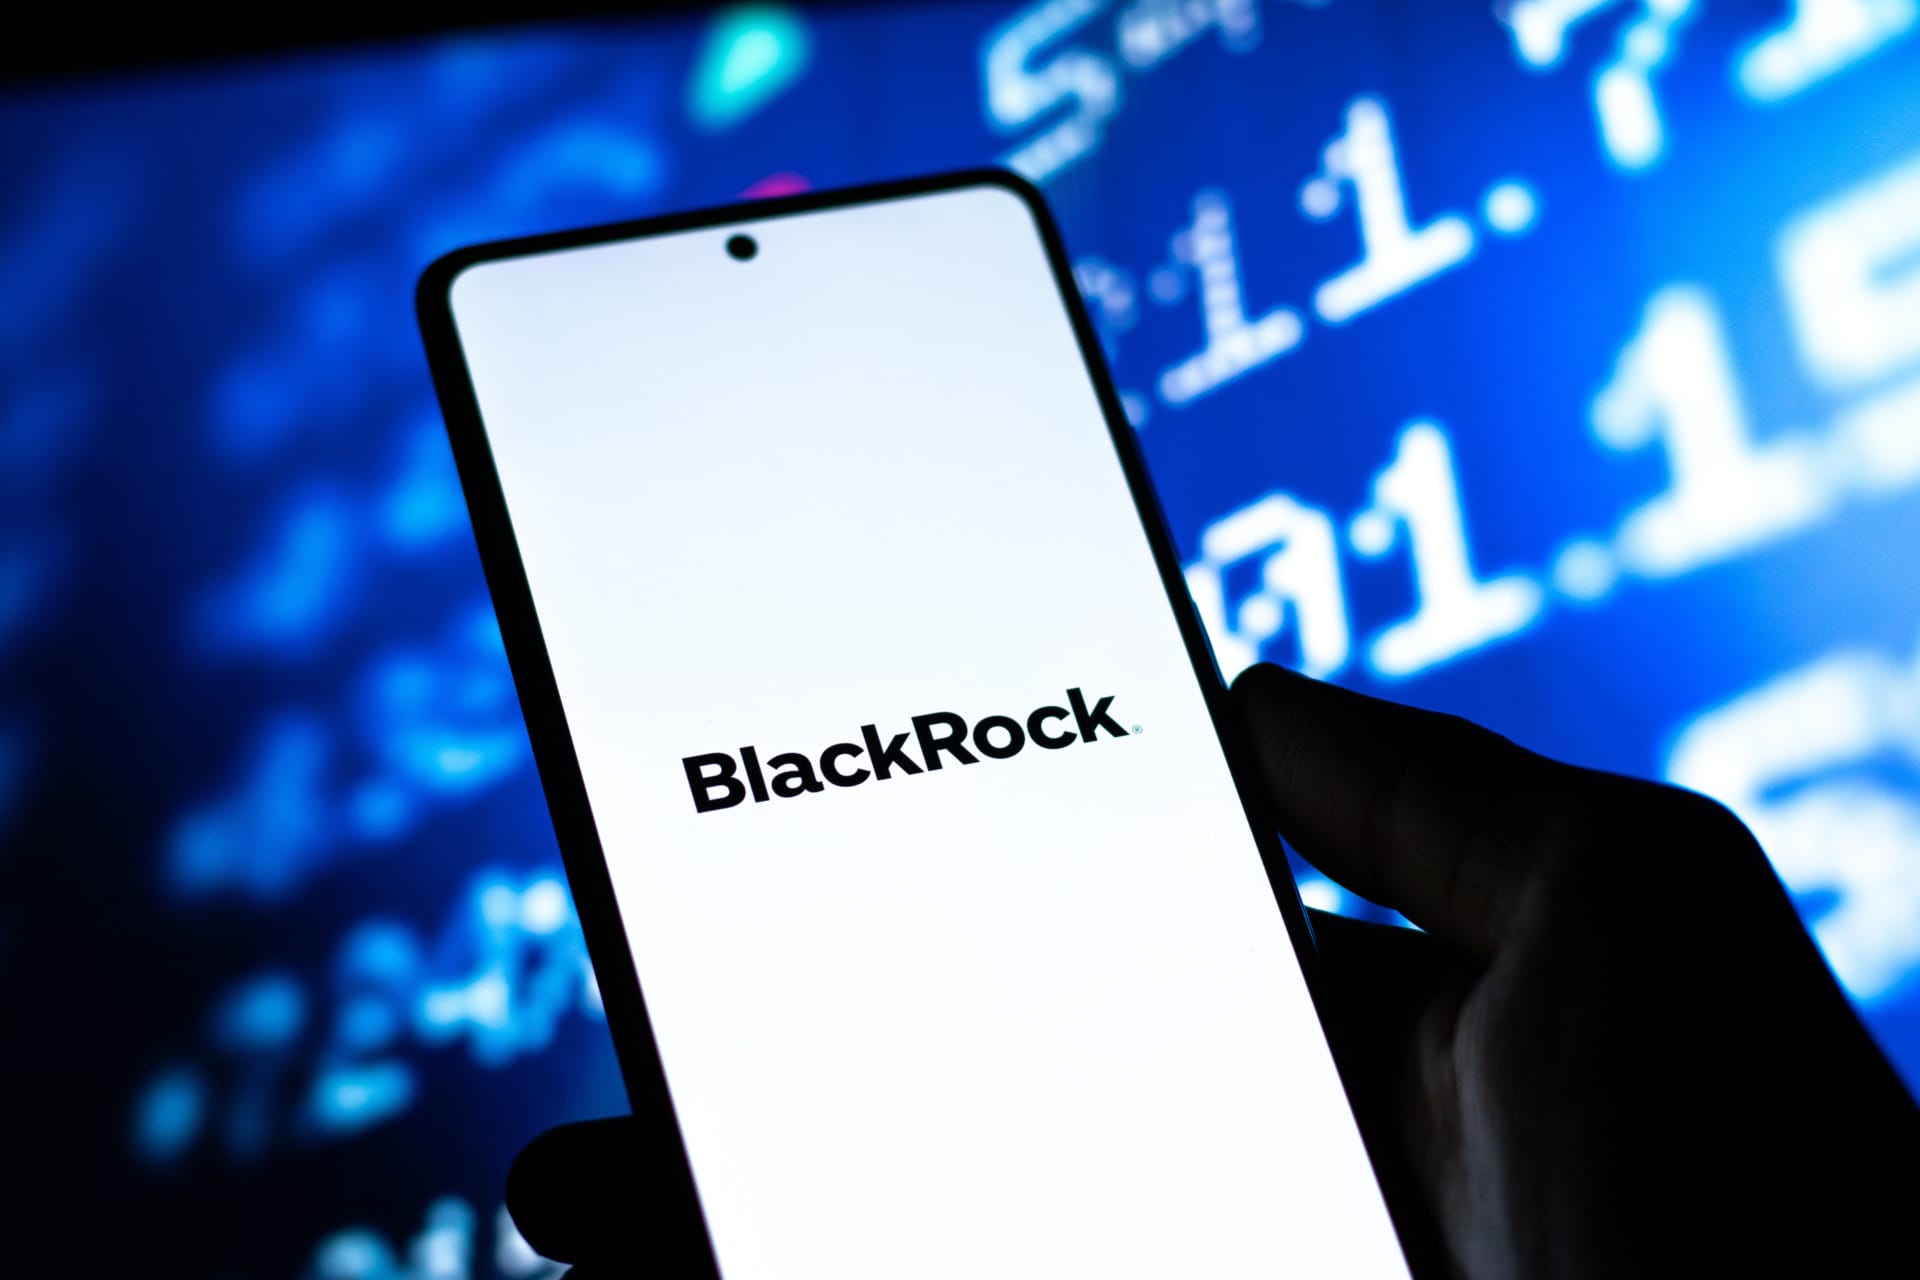 BlackRock intensifica su apuesta en cripto con un innovador ETF de Ethereum en medio de la FUD de Tether

BlackRock, la gigante gestora de inversiones, está dando un paso aún más audaz en el mundo de las criptomonedas. Recientemente presentó una solicitud para un ETF de Ethereum, lo que marca un hito importante para la industria de las criptomonedas.

La presentación de este ETF de Ethereum por parte de BlackRock demuestra su creciente interés y confianza en el futuro de las criptomonedas. A medida que Ethereum continúa ganando popularidad y se consolida como la segunda criptomoneda más grande por capitalización de mercado, BlackRock busca aprovechar esta tendencia positiva.

La presentación del ETF de Ethereum también es un movimiento estratégico de BlackRock en medio de la incertidumbre que rodea a Tether. A medida que crecen las preocupaciones sobre la estabilidad y respaldo de Tether, una criptomoneda estable que se supone está respaldada por dólares estadounidenses, BlackRock busca diversificar su exposición en criptomonedas.

Al intensificar su apuesta en cripto a través de este ETF de Ethereum, BlackRock ha captado la atención de la comunidad de criptomonedas y de los inversores tradicionales por igual. A medida que más instituciones financieras líderes ingresan al mercado de las criptomonedas, se espera que esto aporte un mayor impulso a la adopción masiva de activos digitales.

En resumen, la presentación de la solicitud de ETF de Ethereum por parte de BlackRock marca un hito importante en el mundo de las criptomonedas. Con el creciente interés en cripto y la preocupación sobre Tether, BlackRock busca aprovechar el potencial de Ethereum a través de este innovador producto de inversión. A medida que el mercado de las criptomonedas continúa evolucionando, la participación de actores institucionales como BlackRock podría ser un catalizador clave para la expansión de la industria